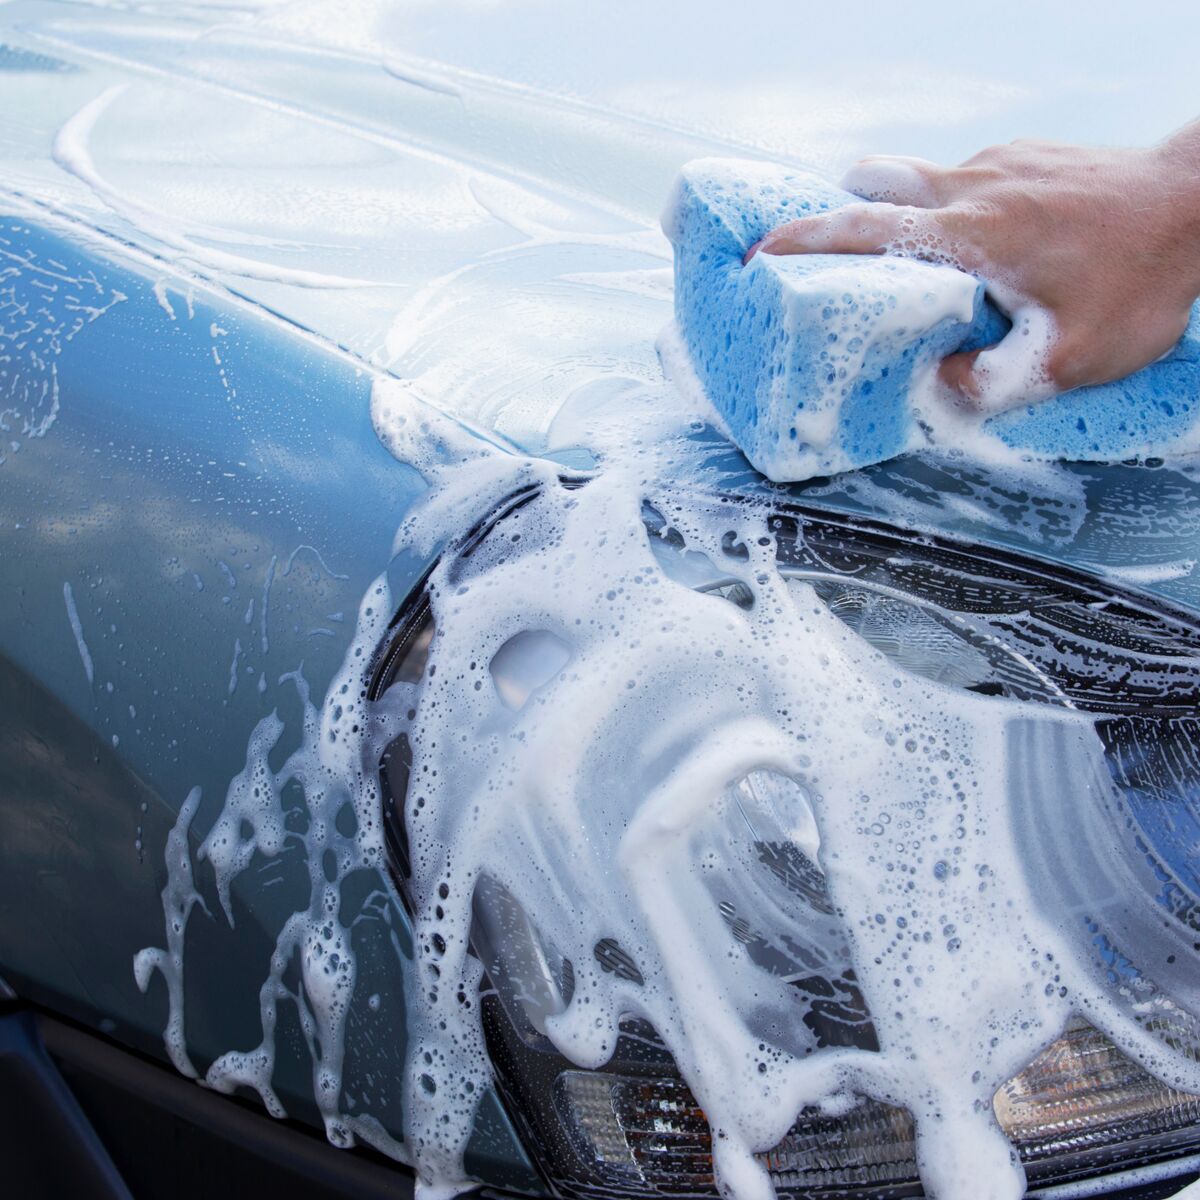 Comment enlever les mauvaises odeurs dans sa voiture ? - Wash